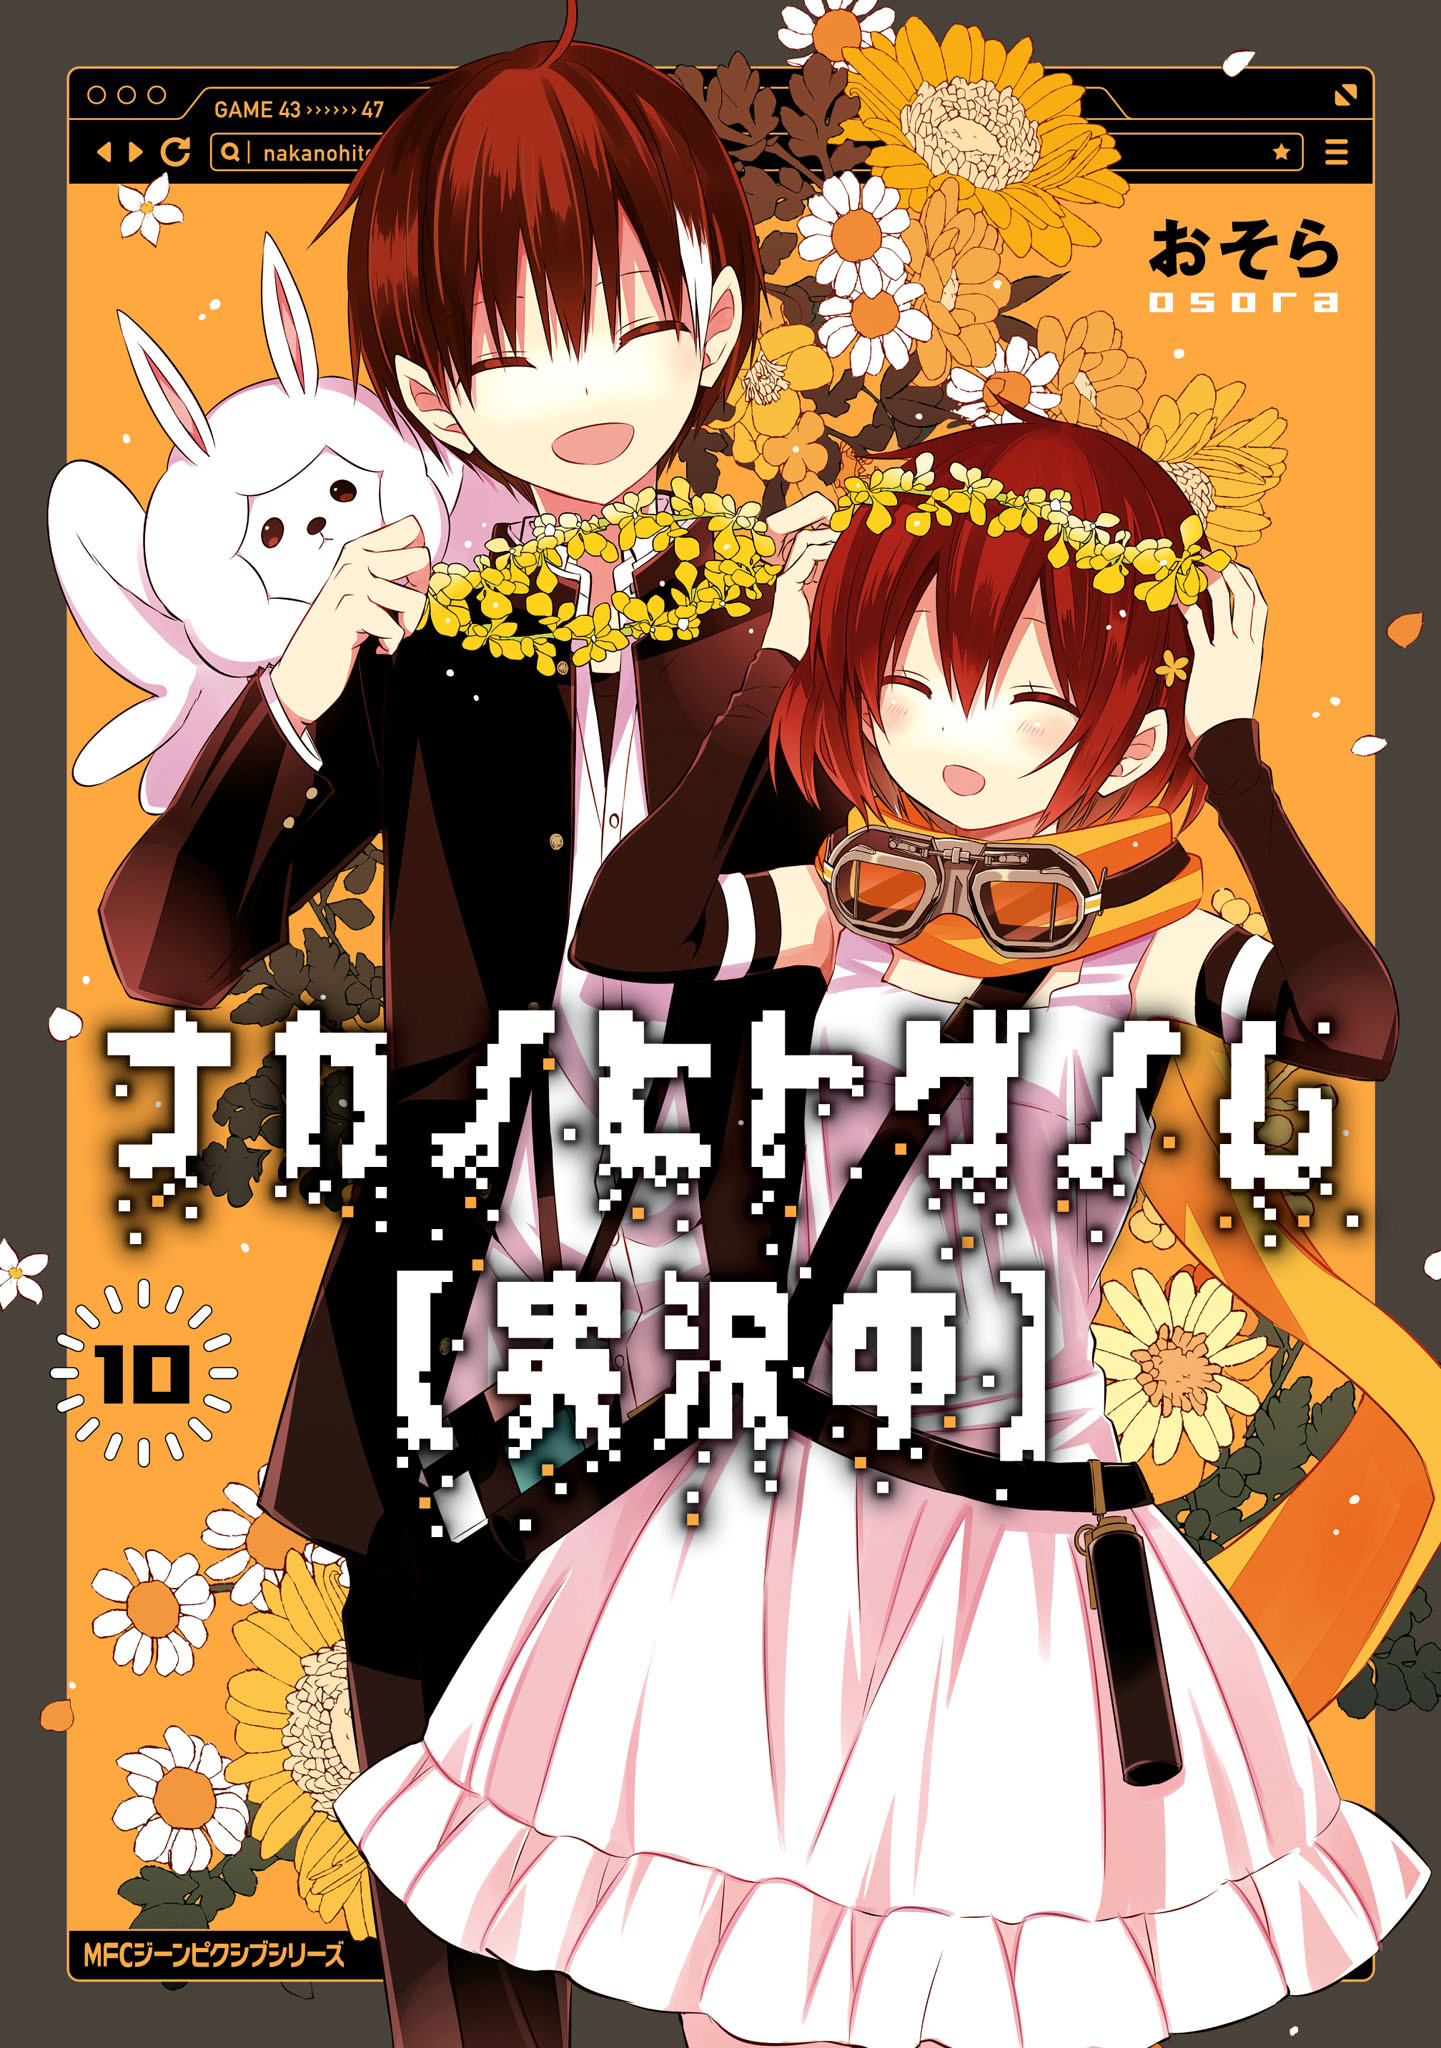 Manga, Naka no Hito Genome Wiki